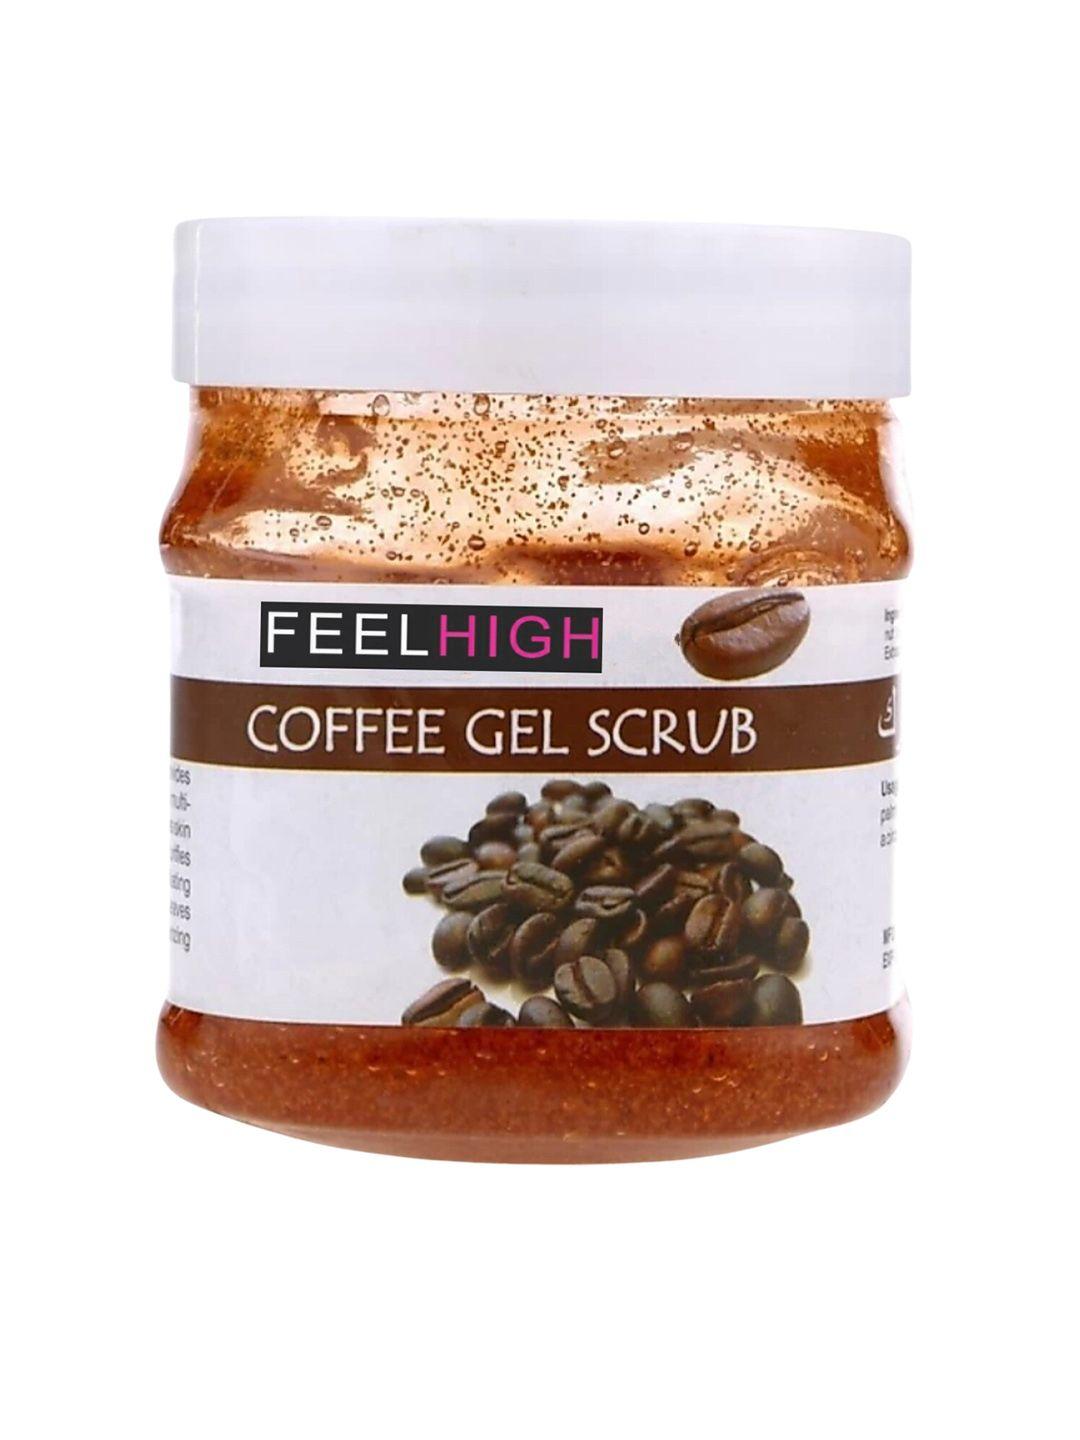 feelhigh coffee gel face & body scrub with coffee extract - 500 ml